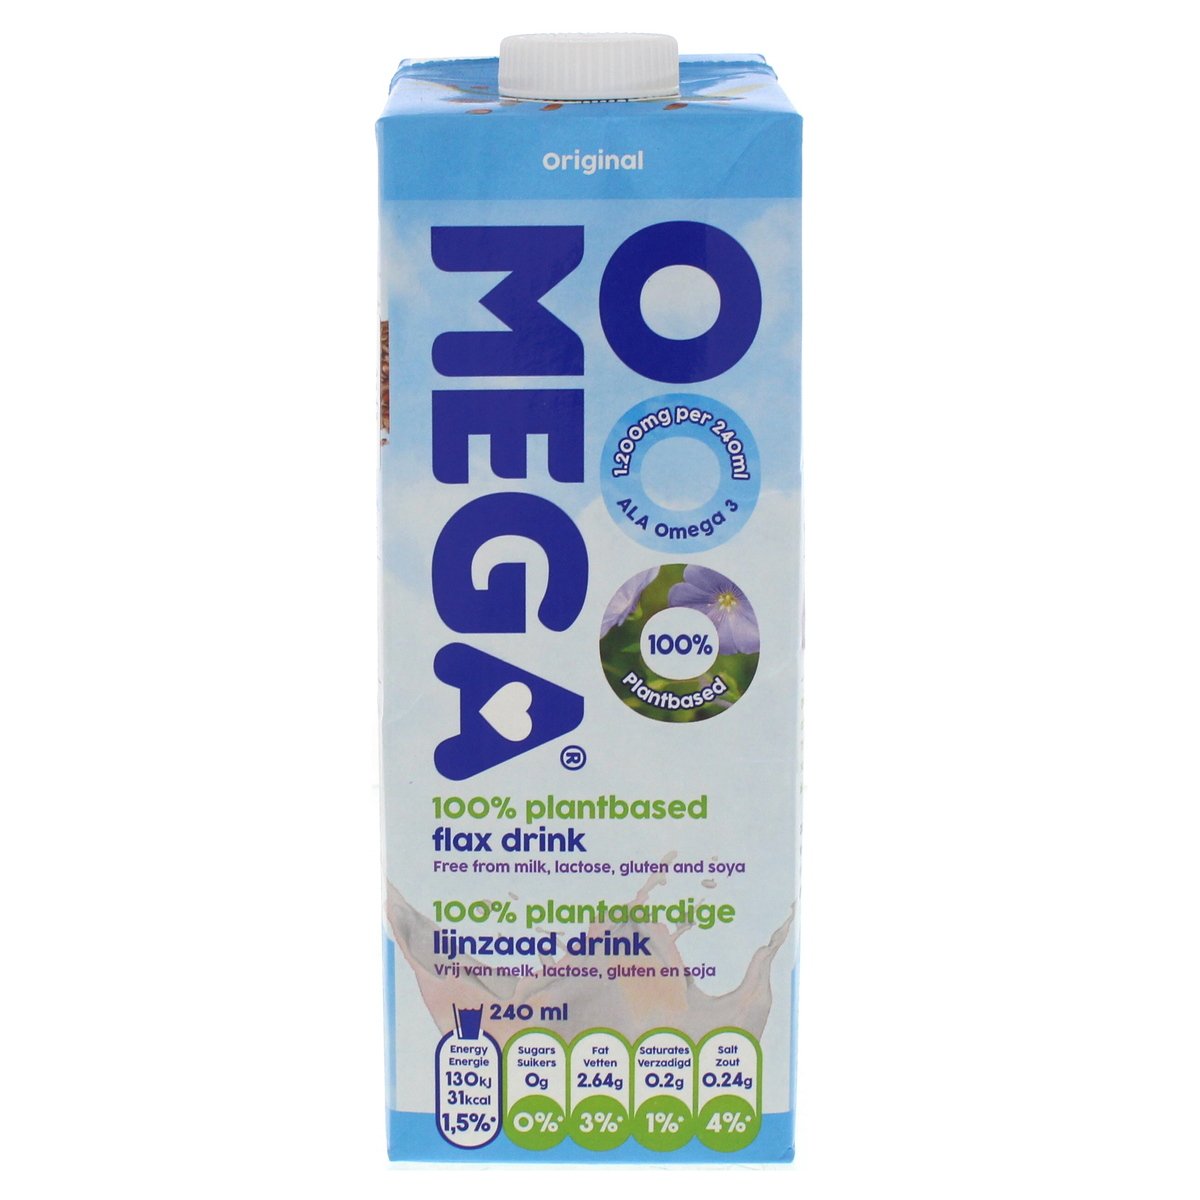 Ooomega Original Flax Drink 1 Litre